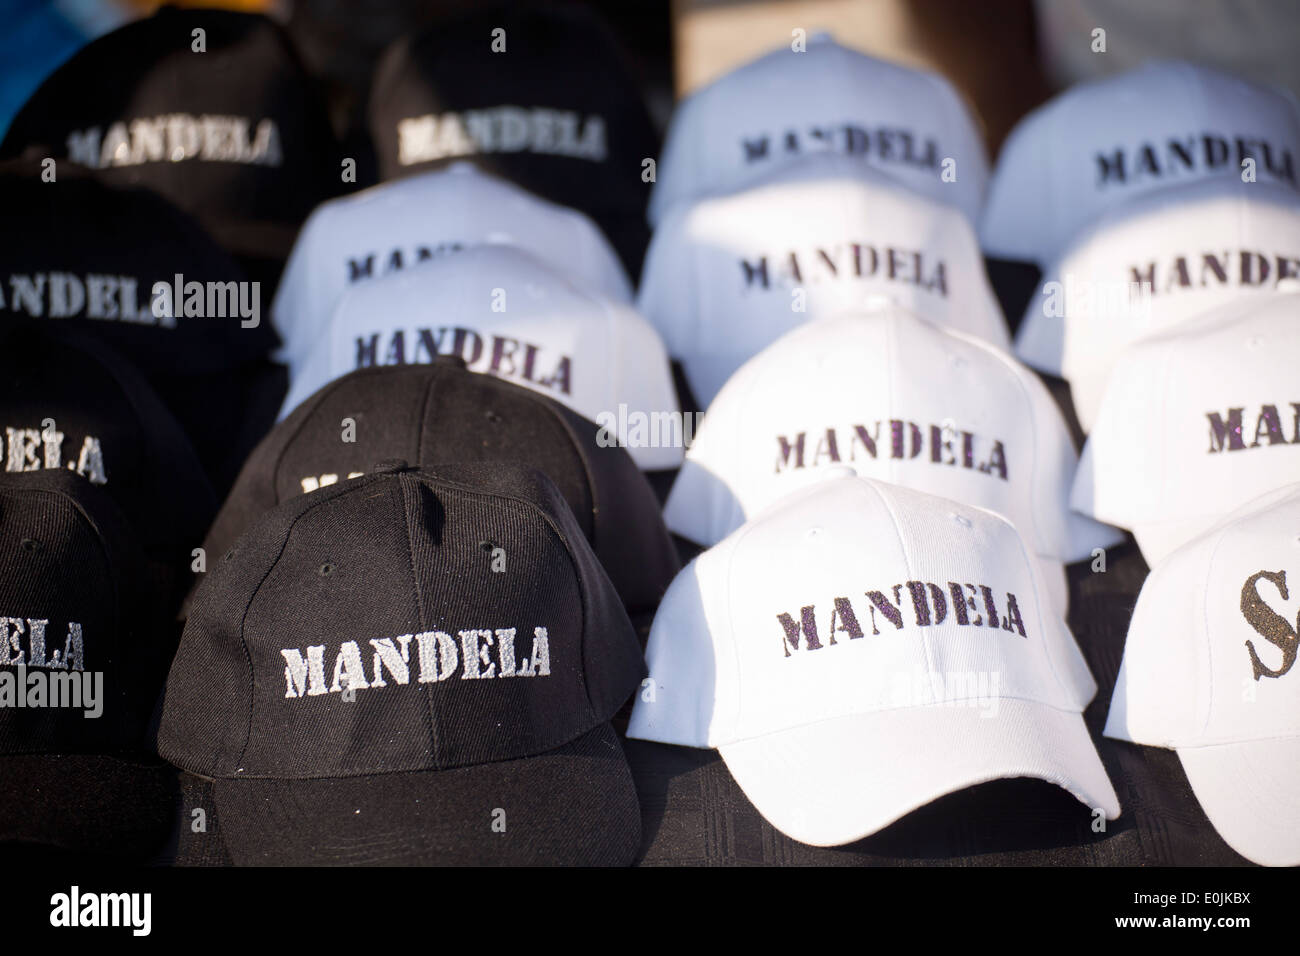 "Baseballcaps ""Mandela"" in Soweto, Johannesburg, Gauteng, South Africa, Africa" Stock Photo